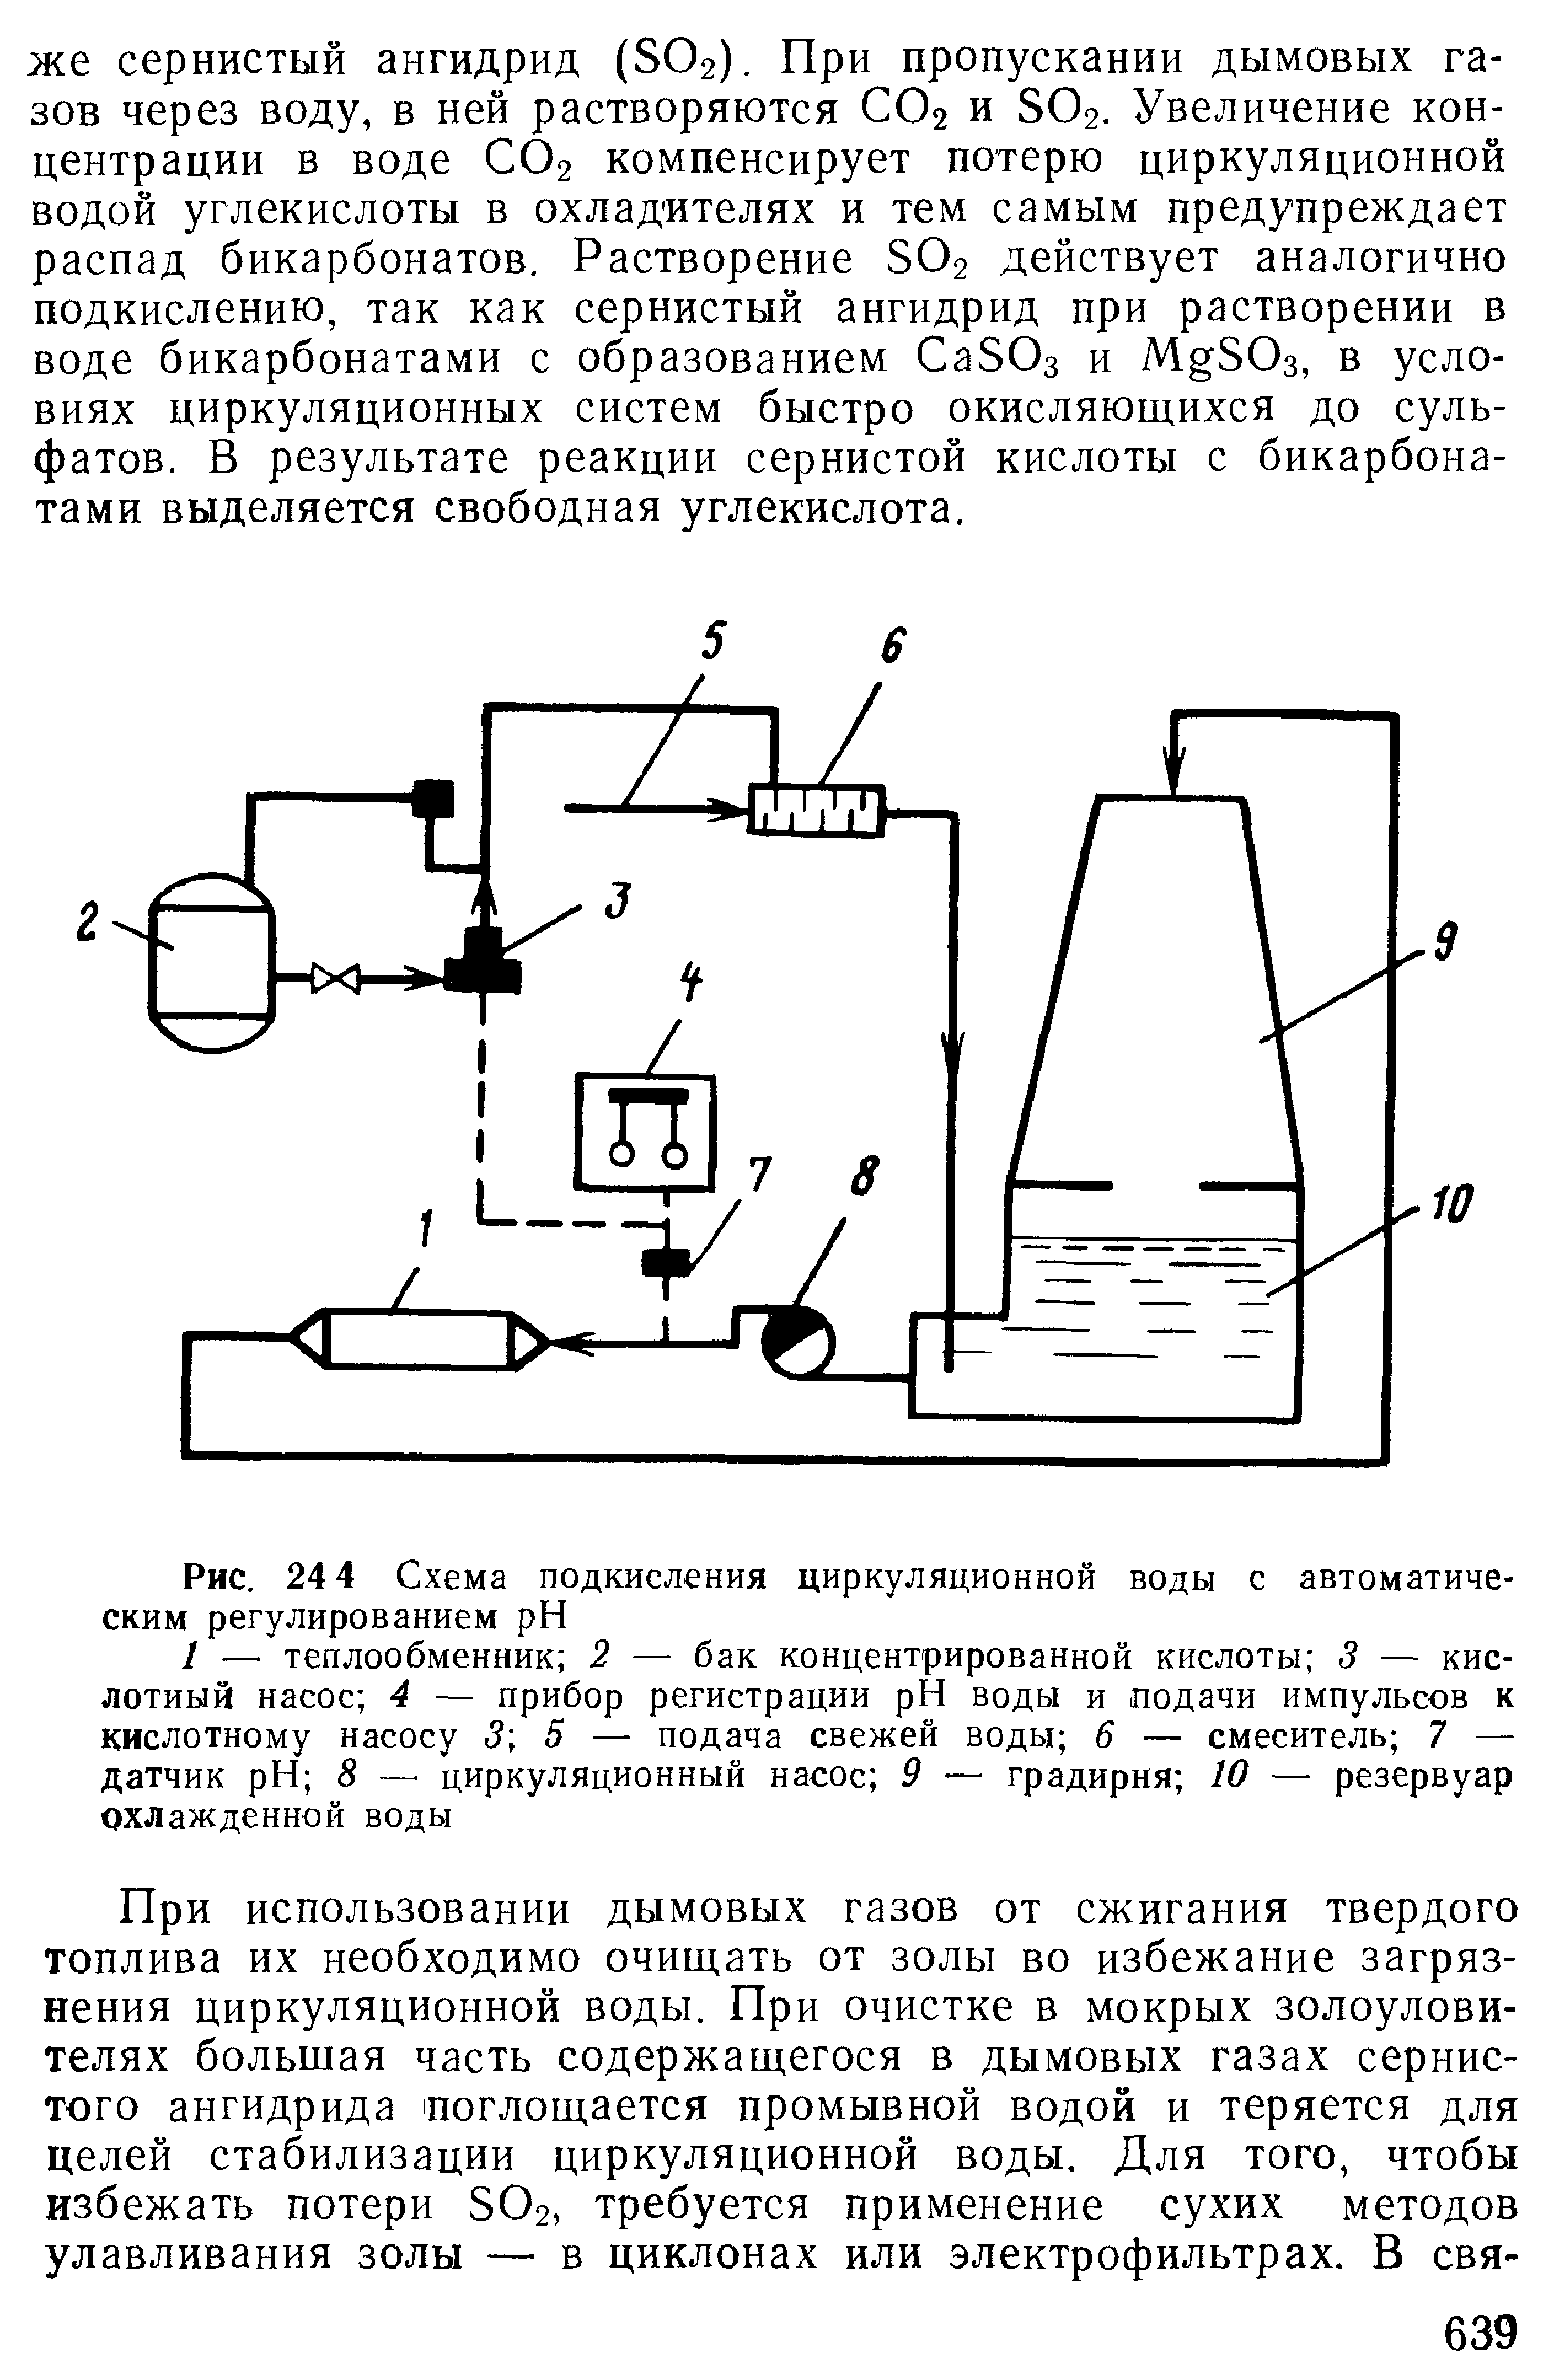 Рис. 24 4 Схема подкисления циркуляционной воды с автоматическим регулированием pH
